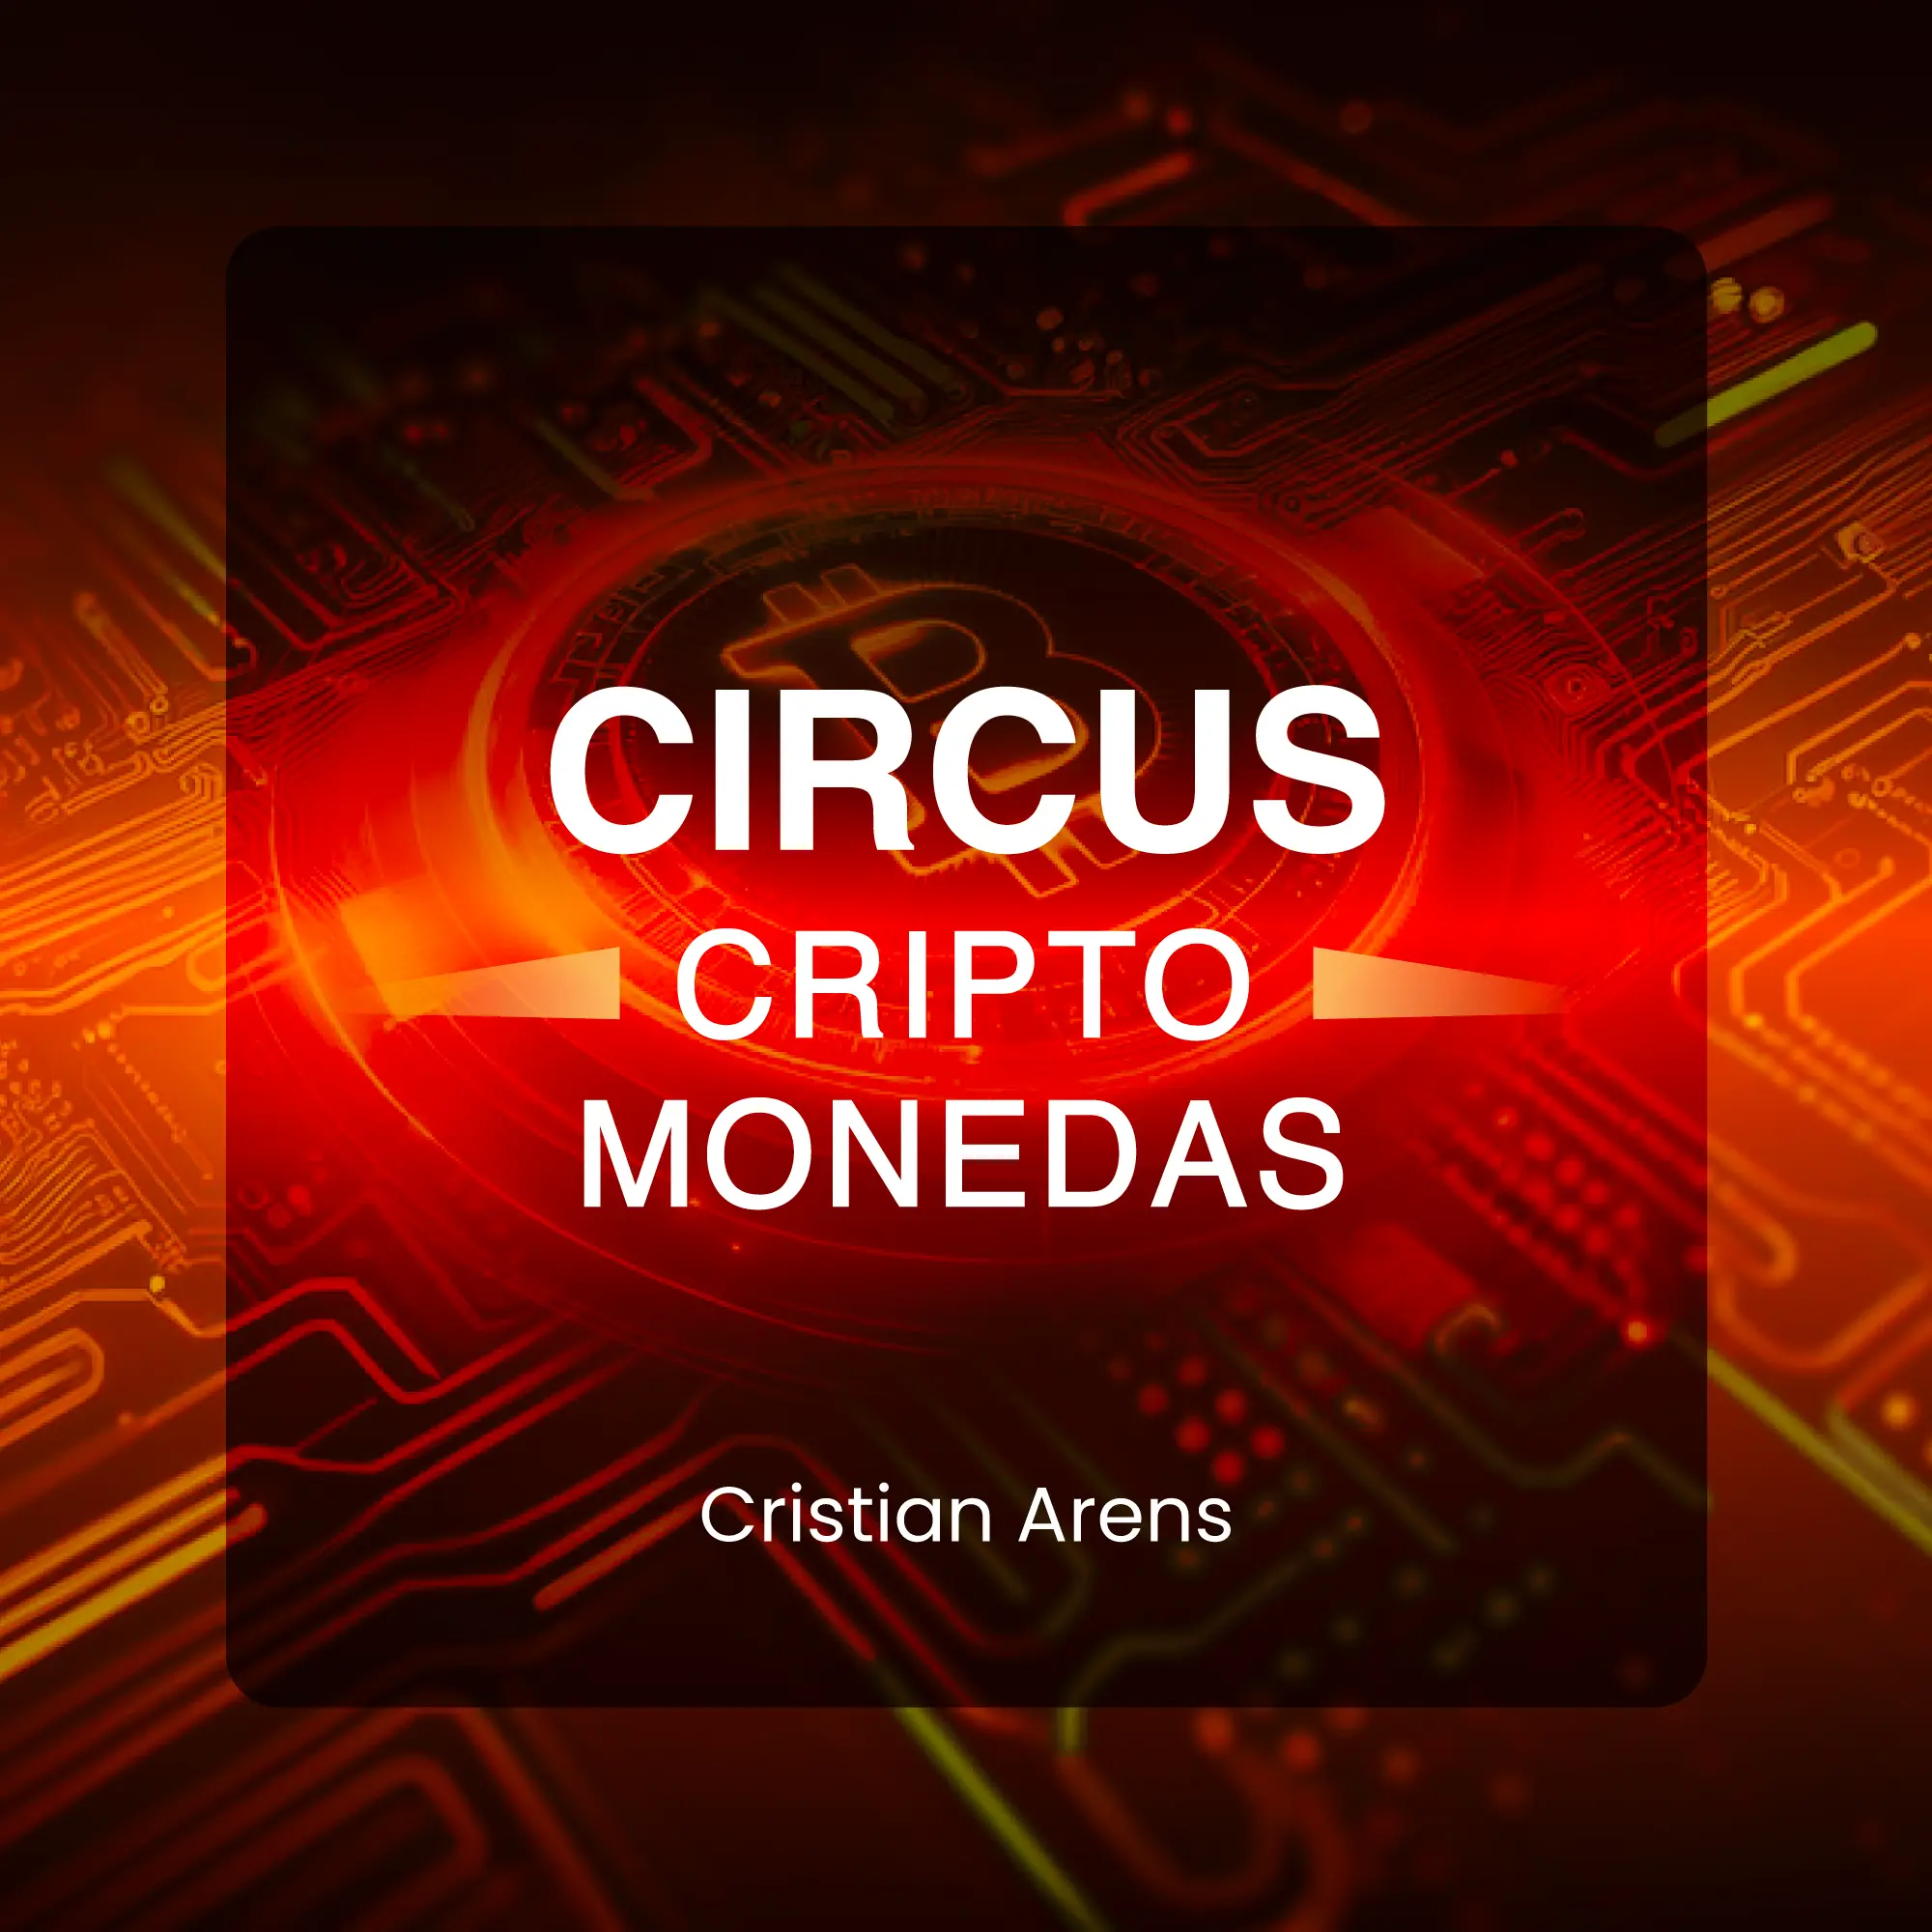 Circus cripto modenas